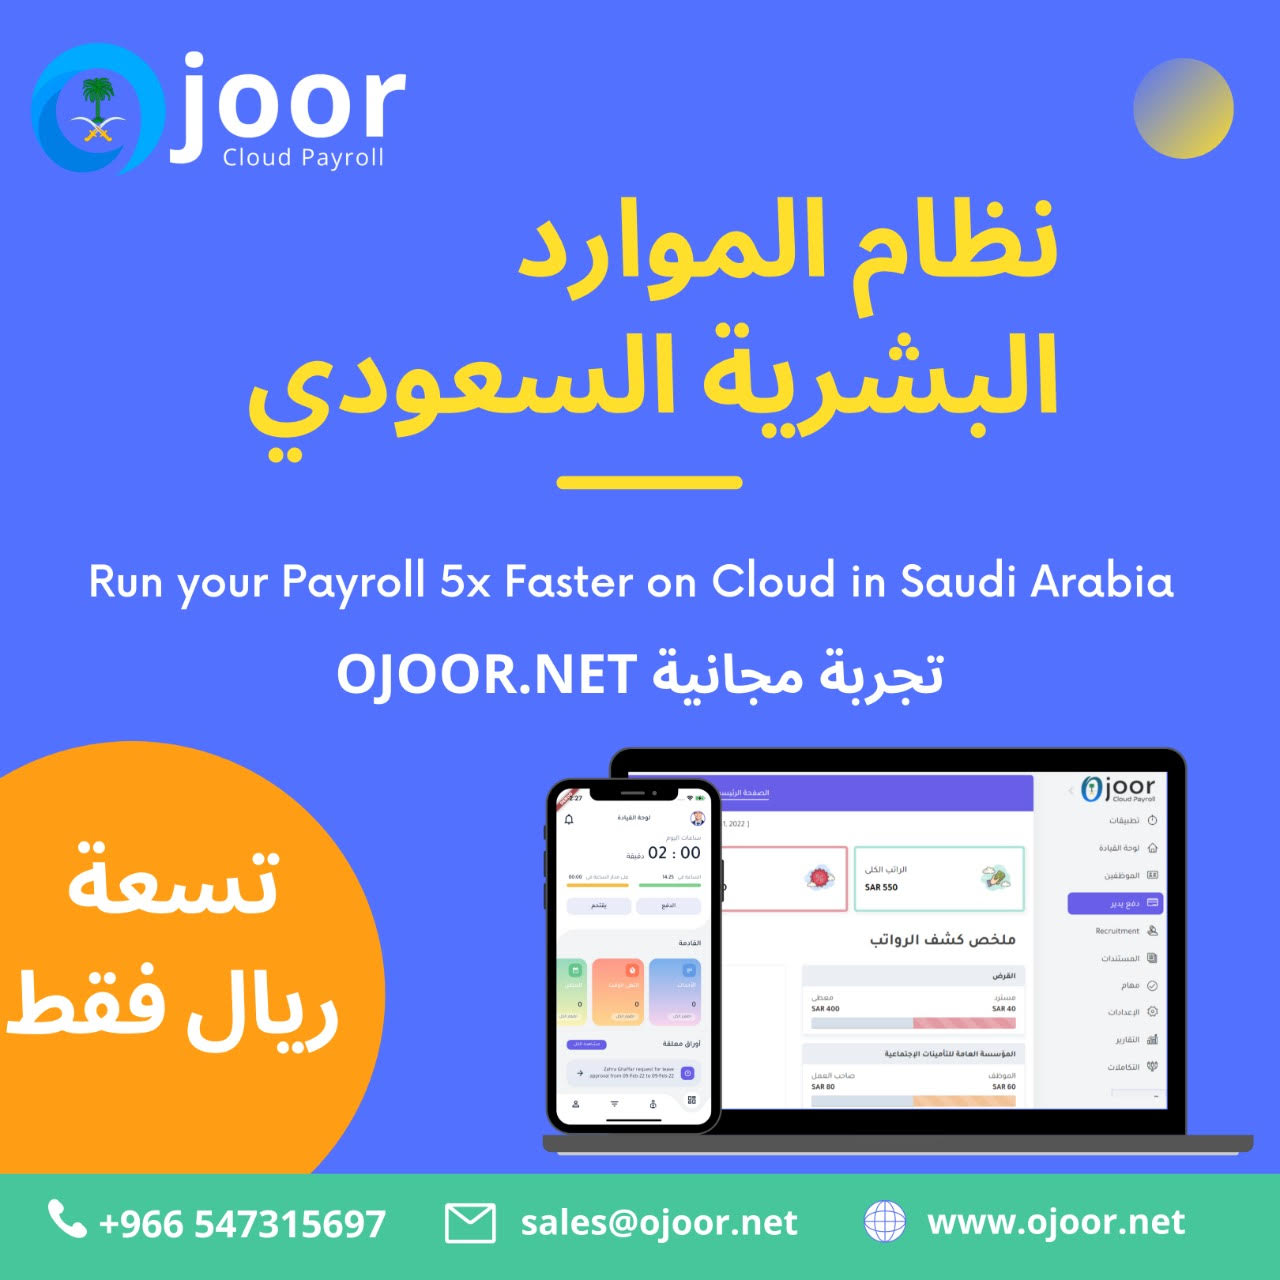 ما هي فوائد برنامج كشف رواتب المستند إلى الويب في نظام رواتب سعودي؟